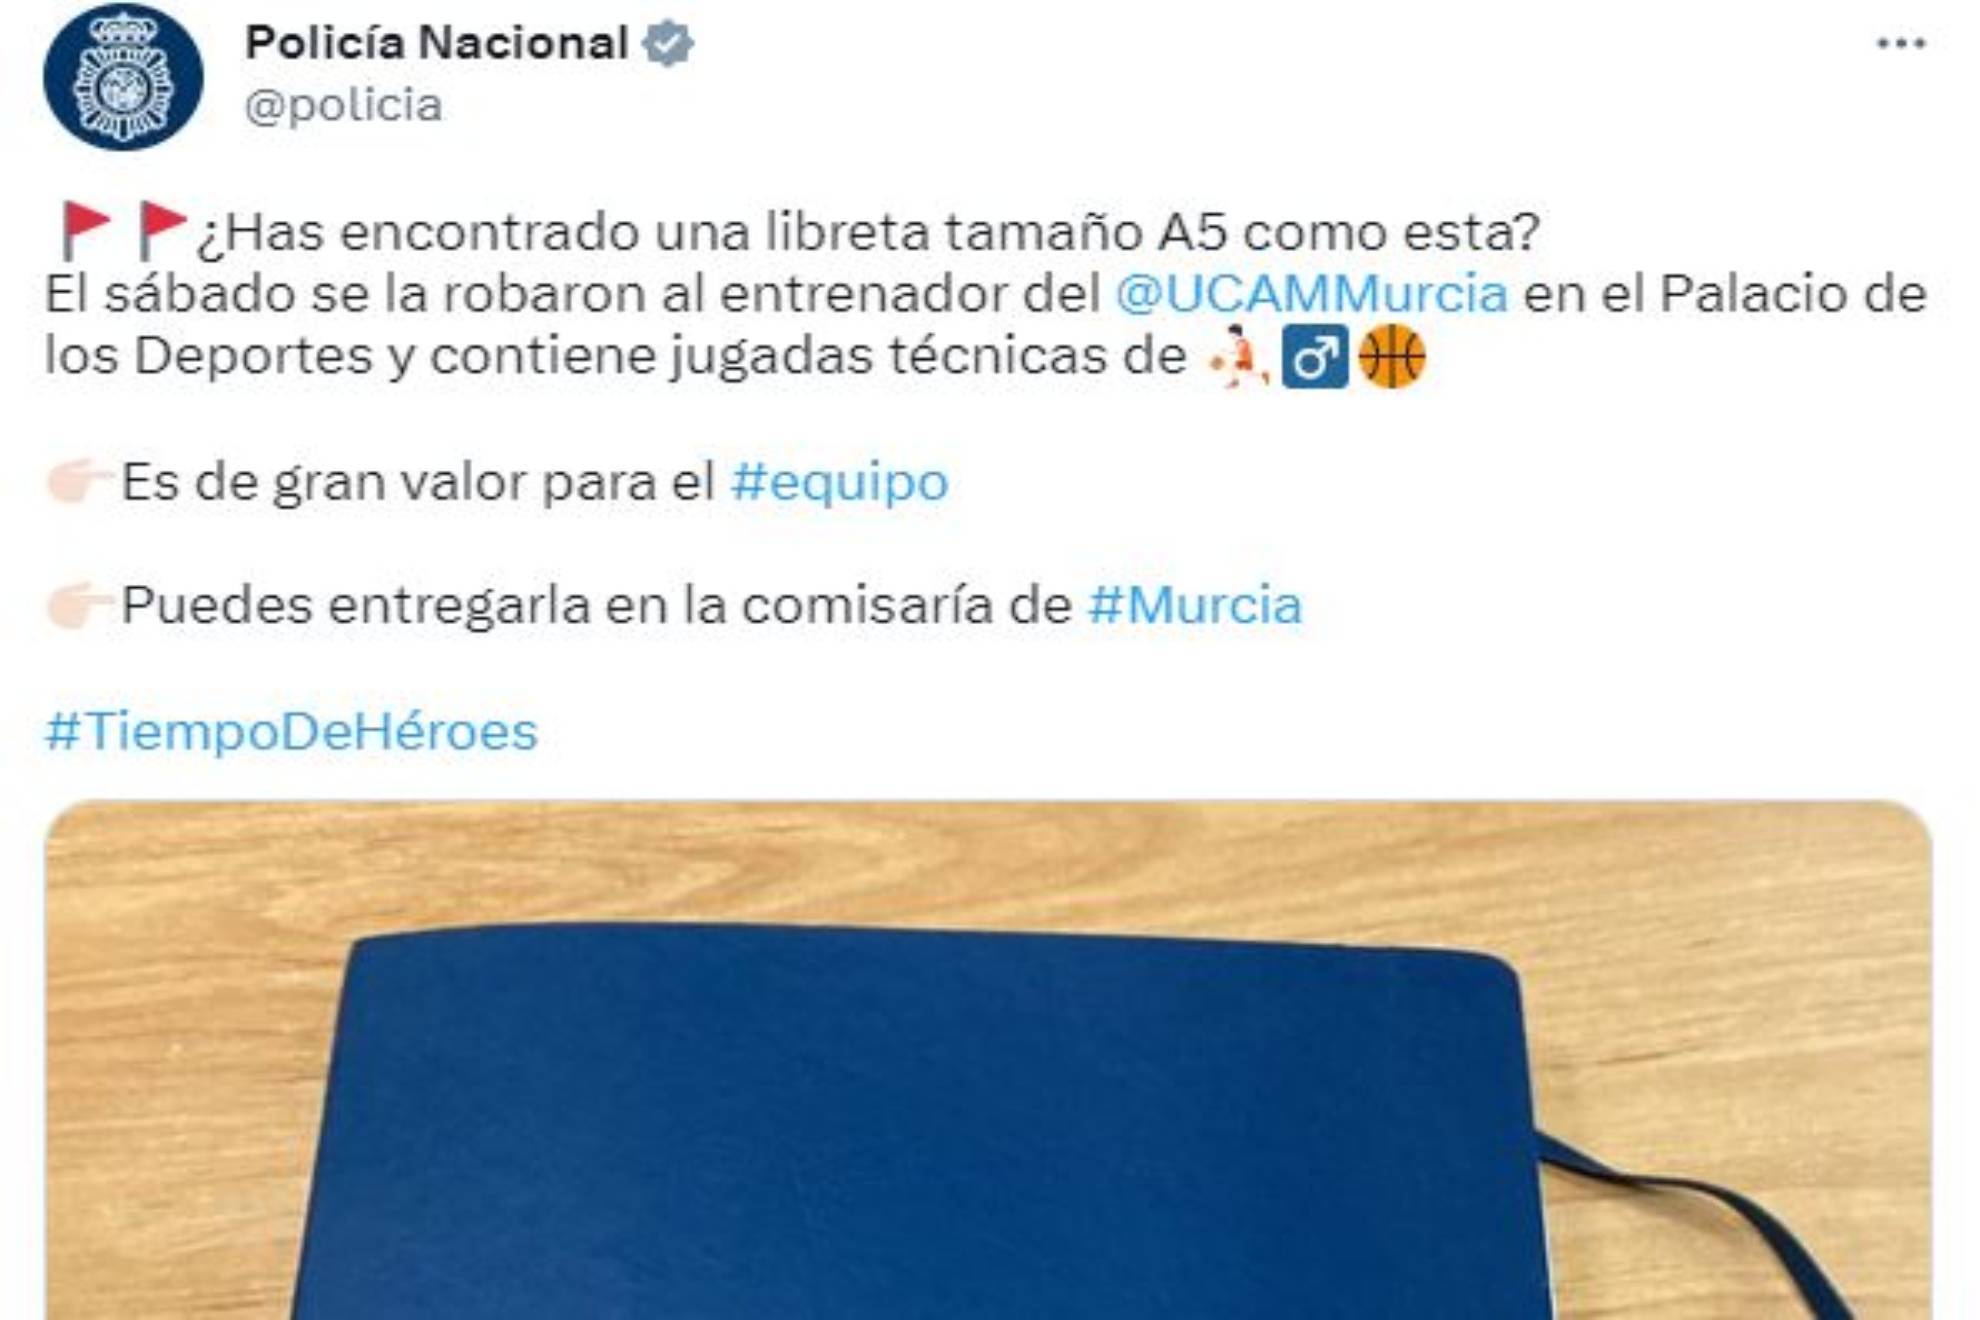 La Policía Nacional denuncia el robo de la libreta del entrenador del UCAM Murcia... tras sentirse perjudicado ante el Real Madrid